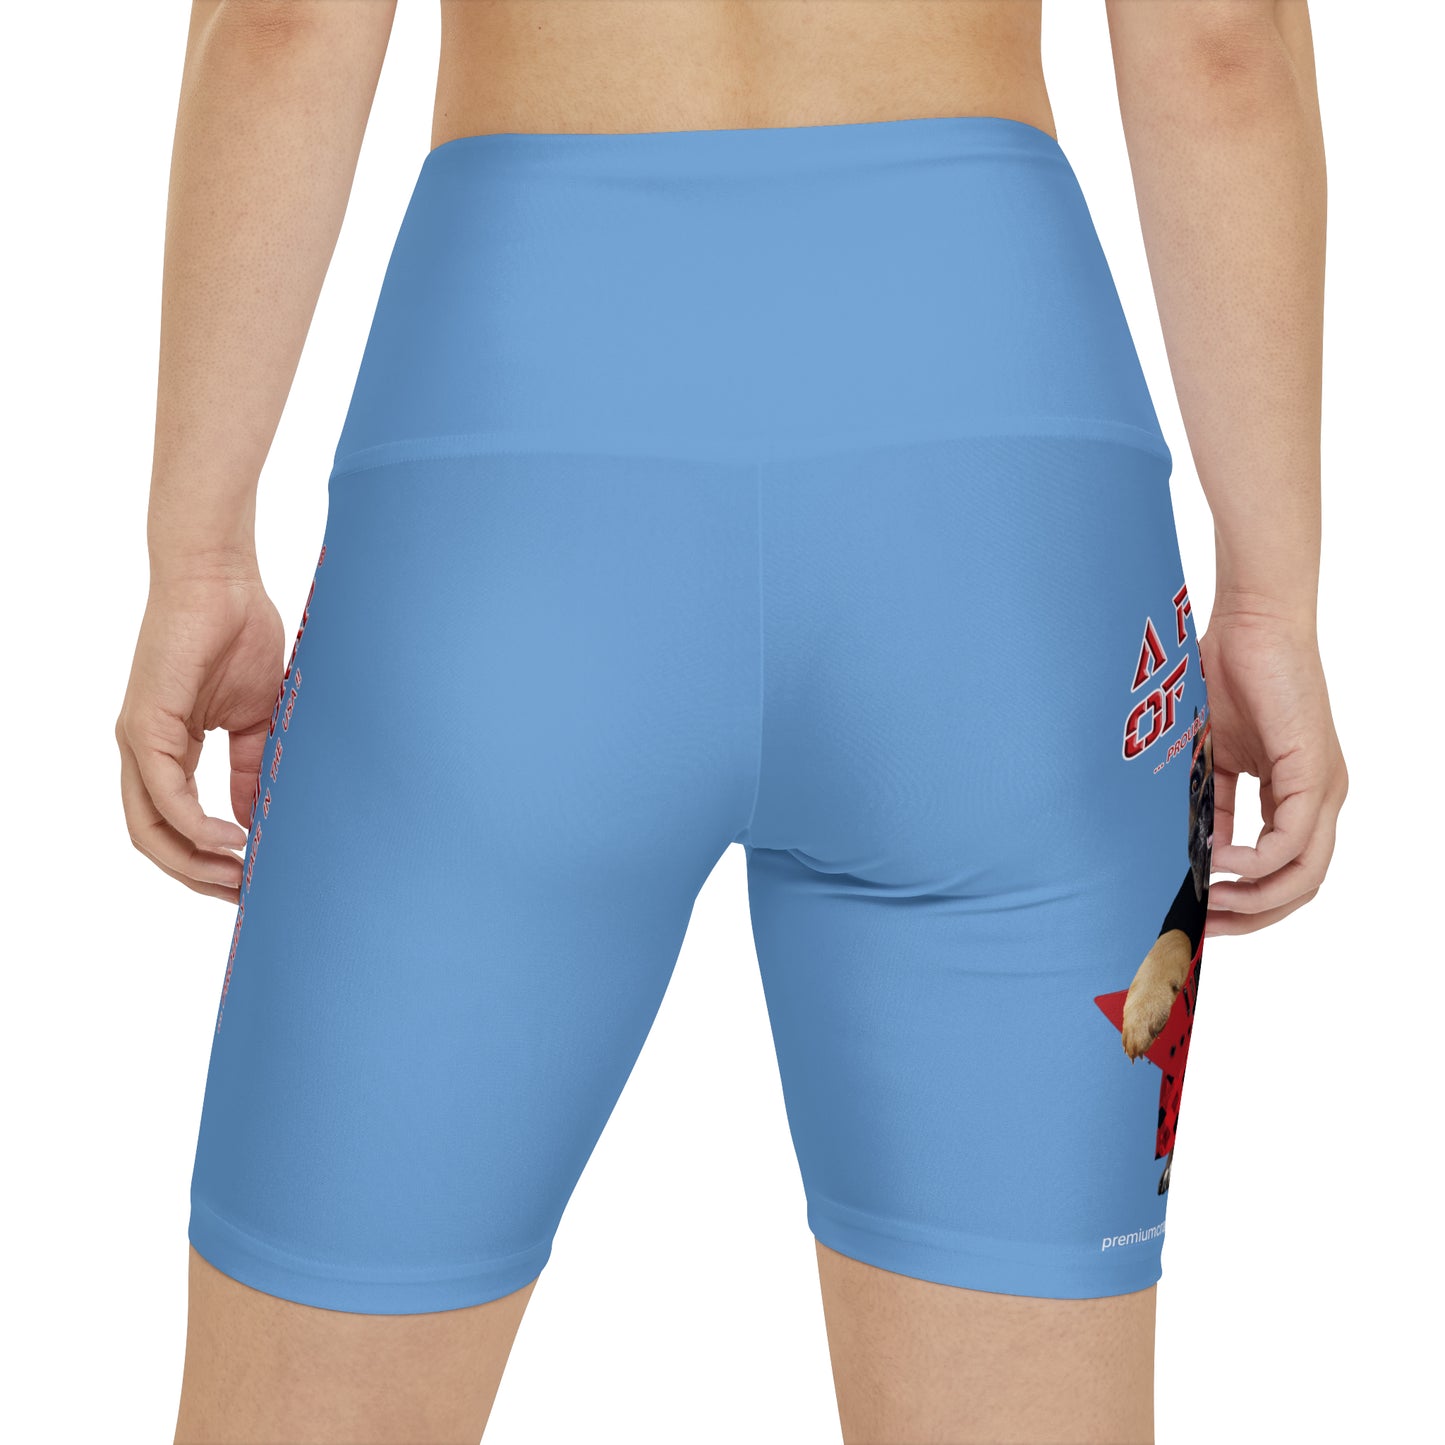 A Piece Of Crap II Women's Workout Shorts - Light Blue